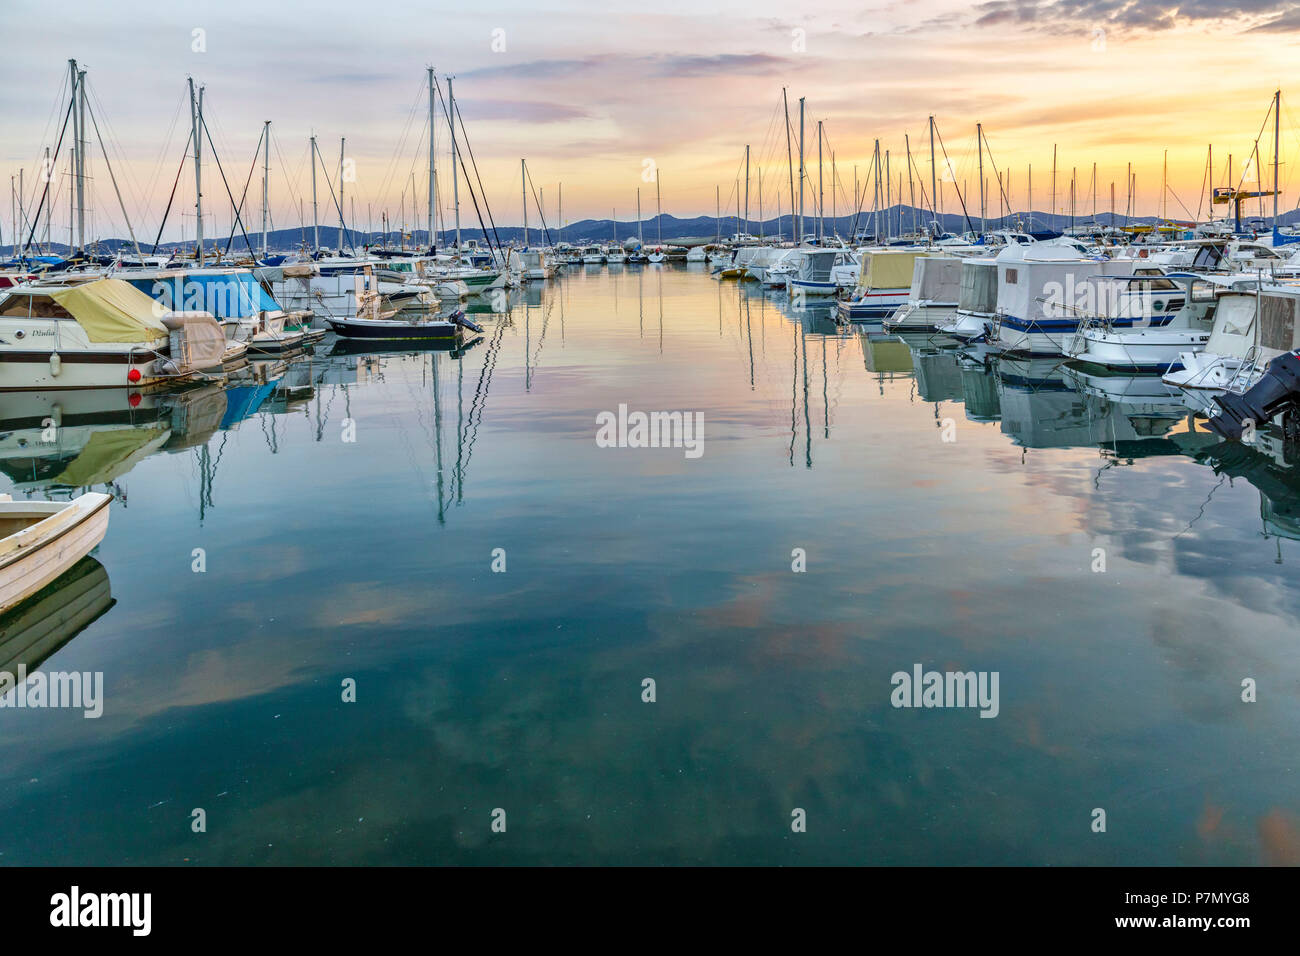 Europe, Croatia, North Dalmatia, Dalmatian coast, Zadar, Zara, boats in the  Tankerkomerc harbour Stock Photo - Alamy